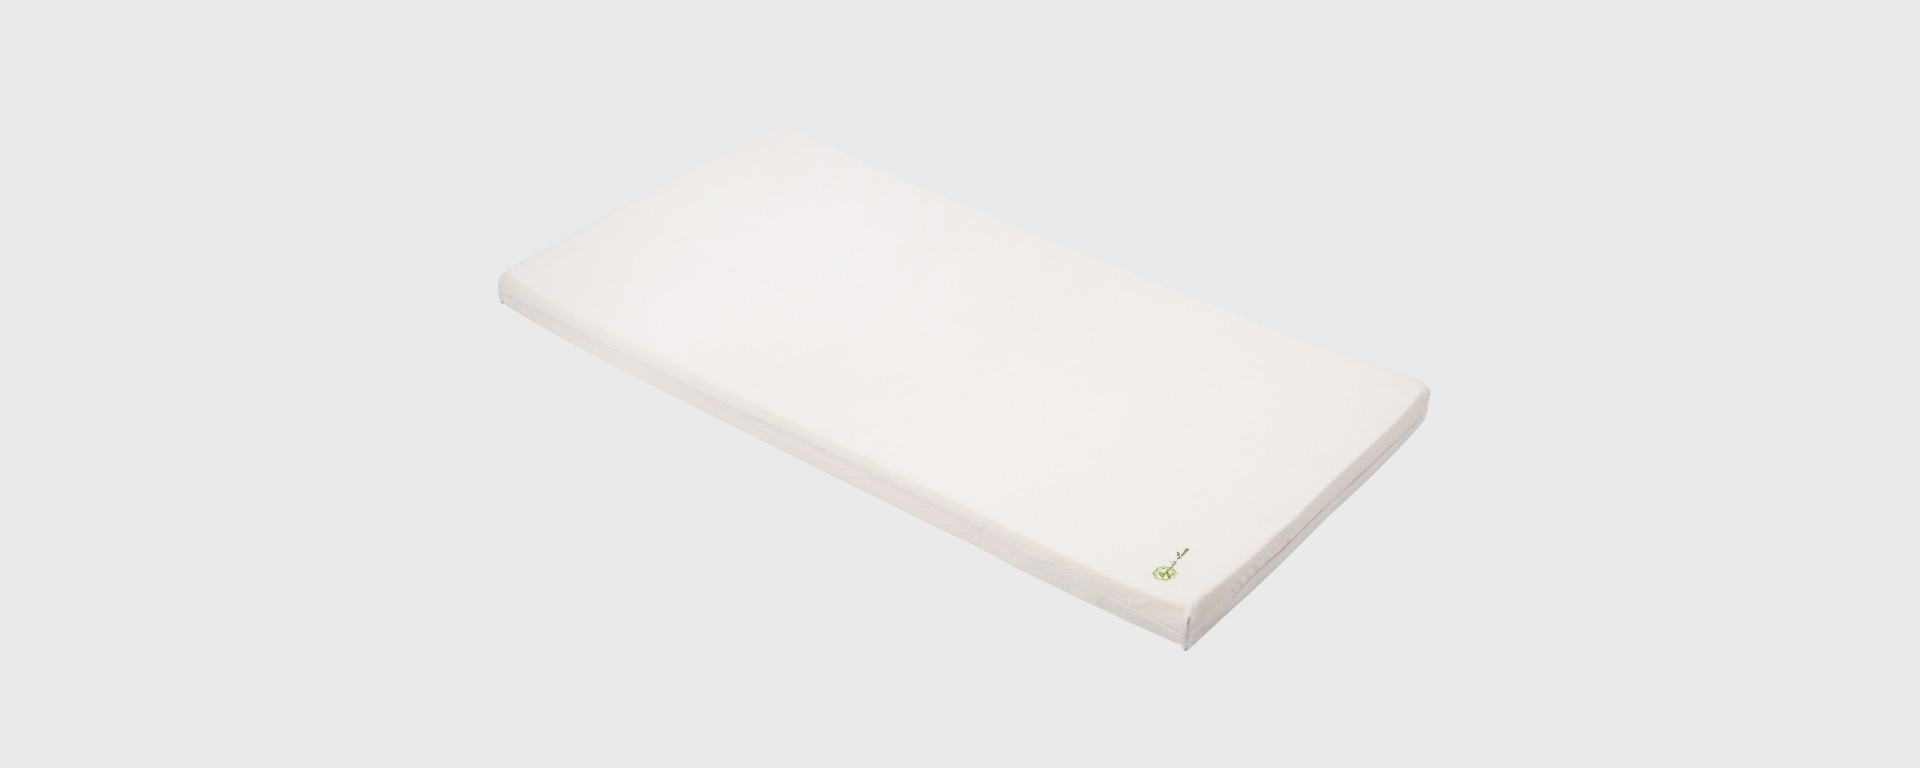 mattress_layout-01